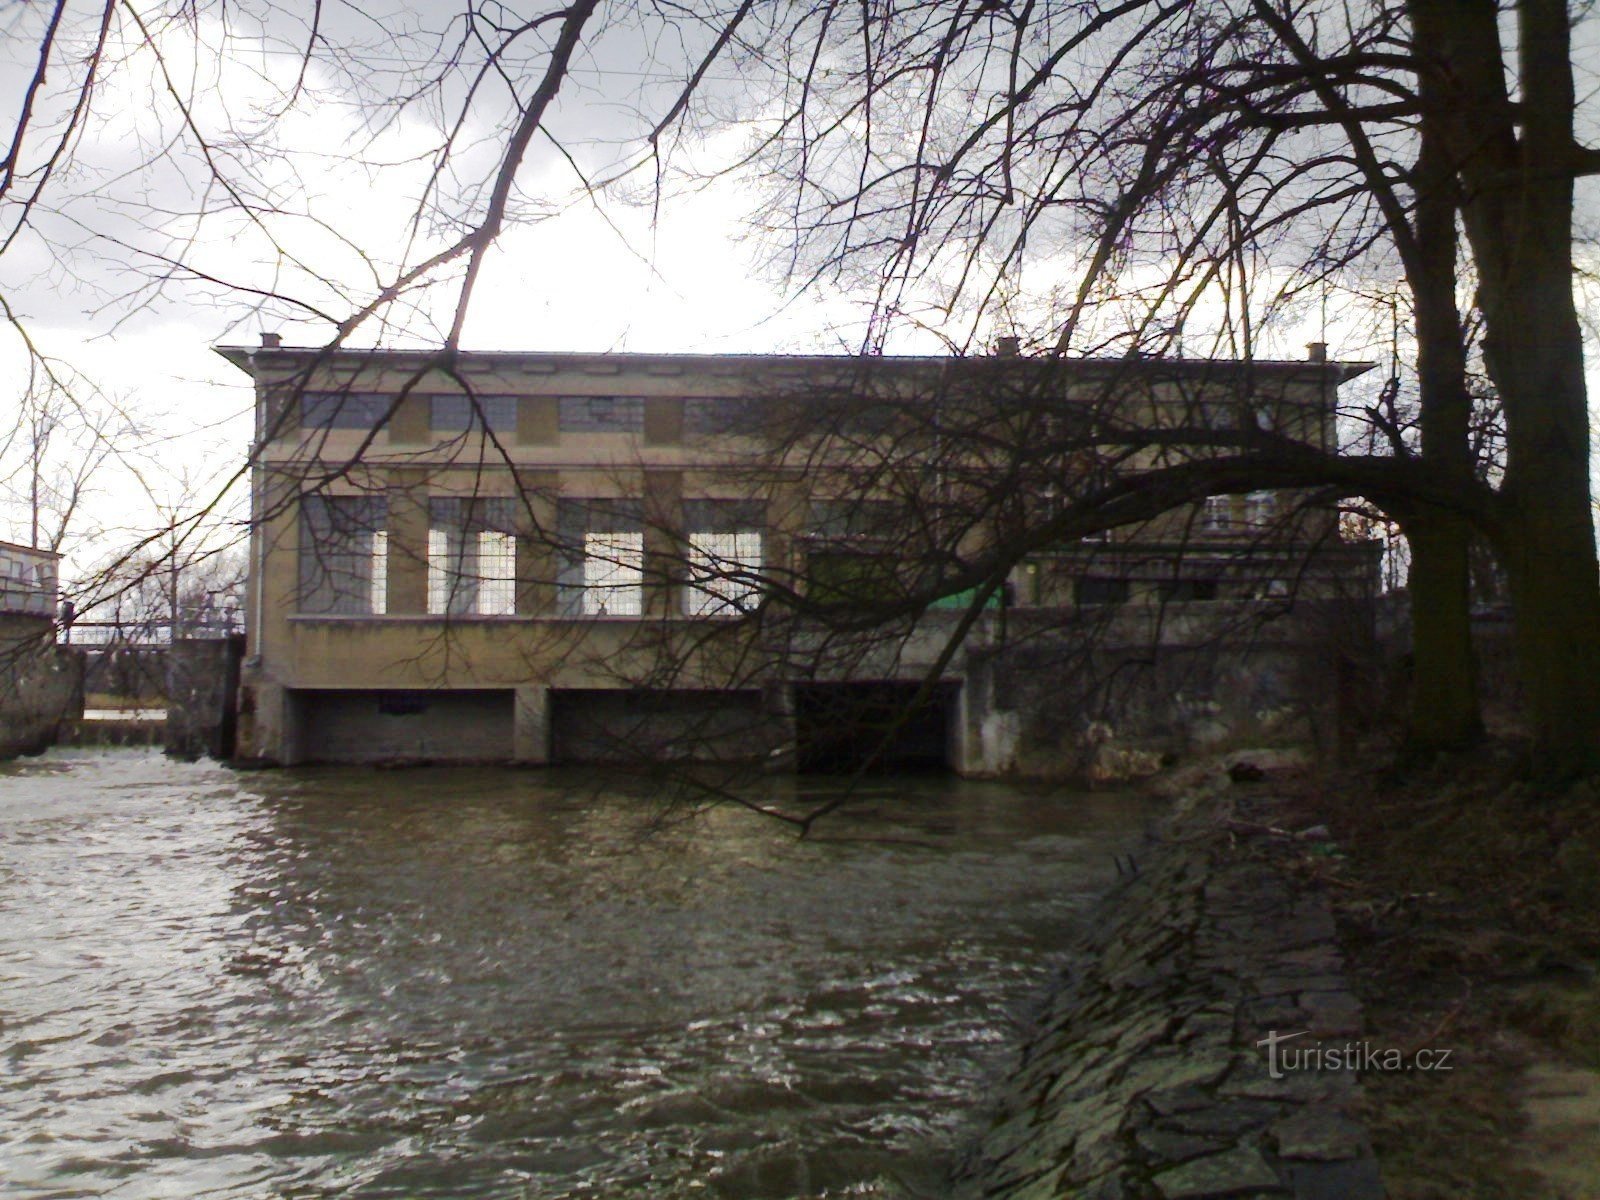 Albrechtice nad Orlicí - φράγμα στο Orlicí, υδροηλεκτρικό εργοστάσιο